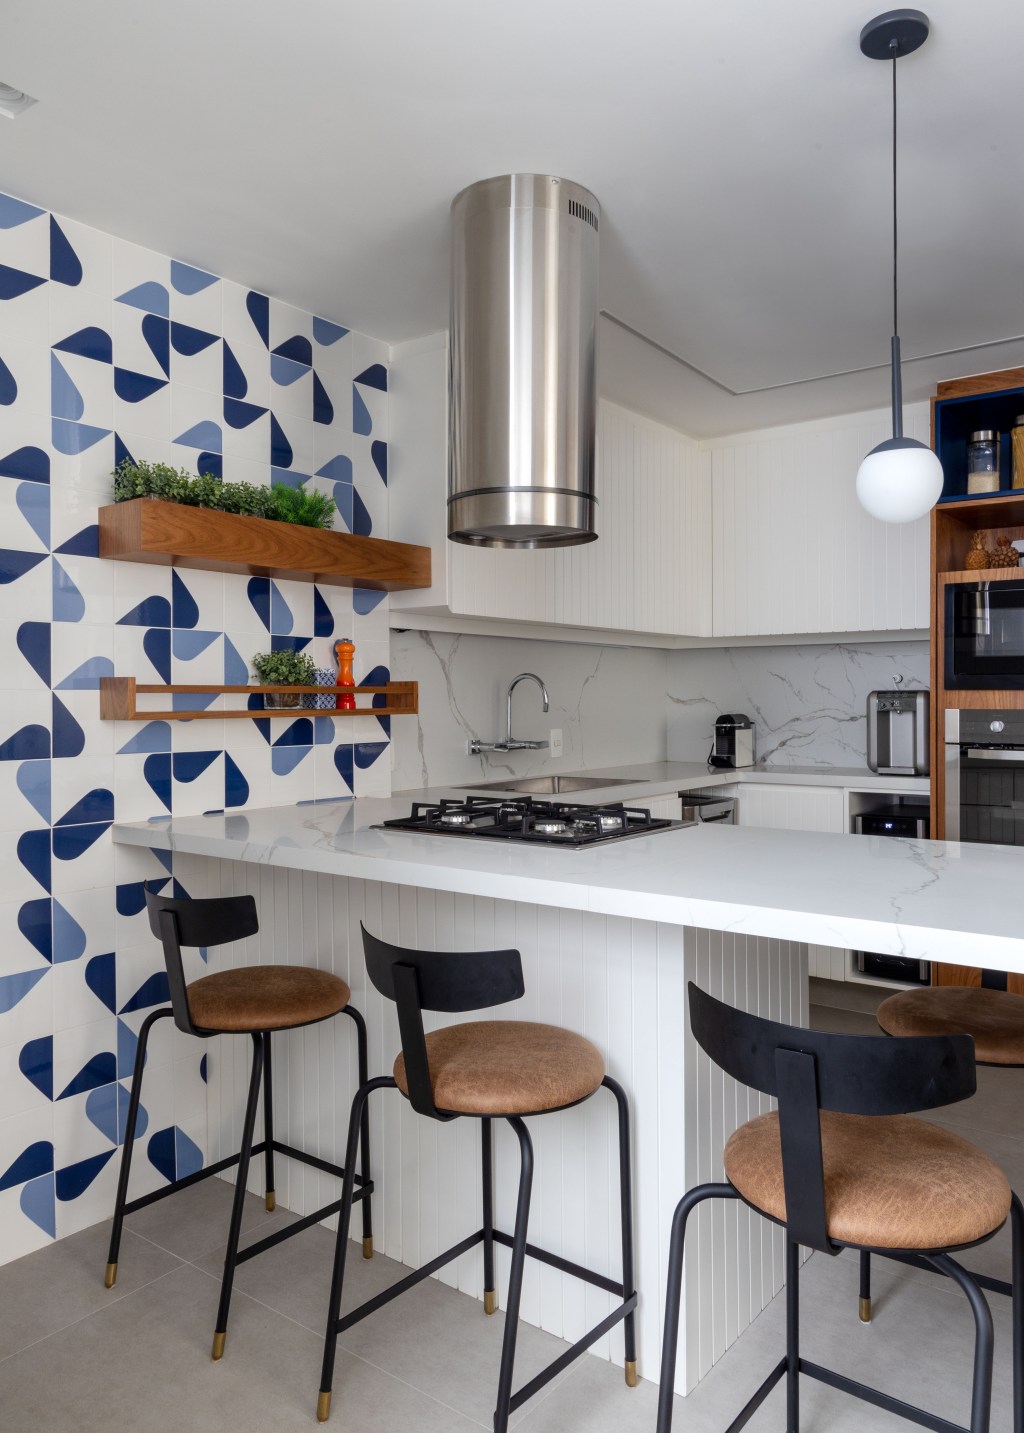 Apartamento carioca de 90 m² tem décor modernista inspirado em Brasília. Projeto de Studio 021 Arquitetura. Na foto, cozinha com península e azulejos geométricos.